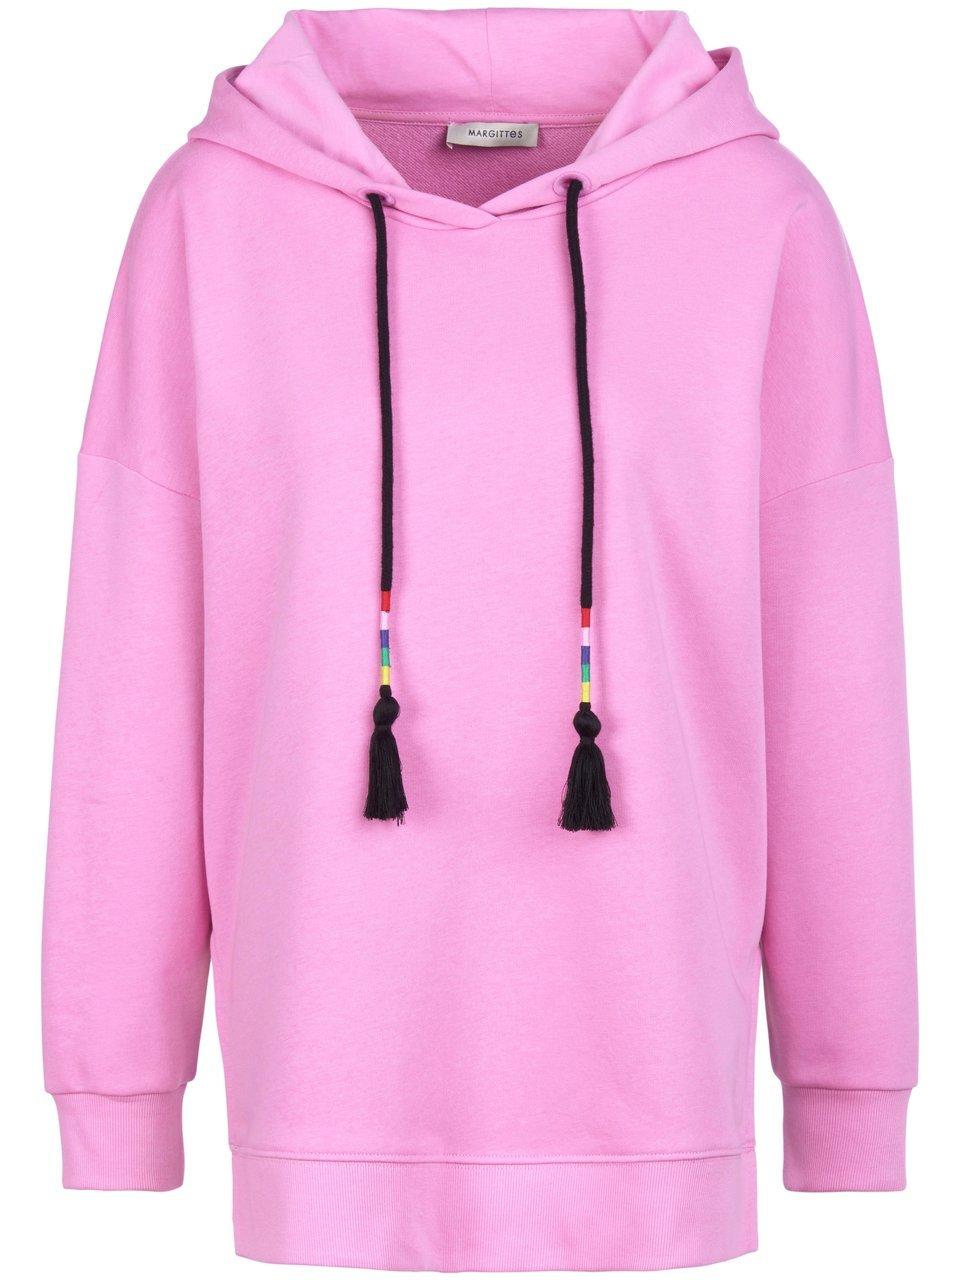 Sweatshirt capuchon Van Margittes pink